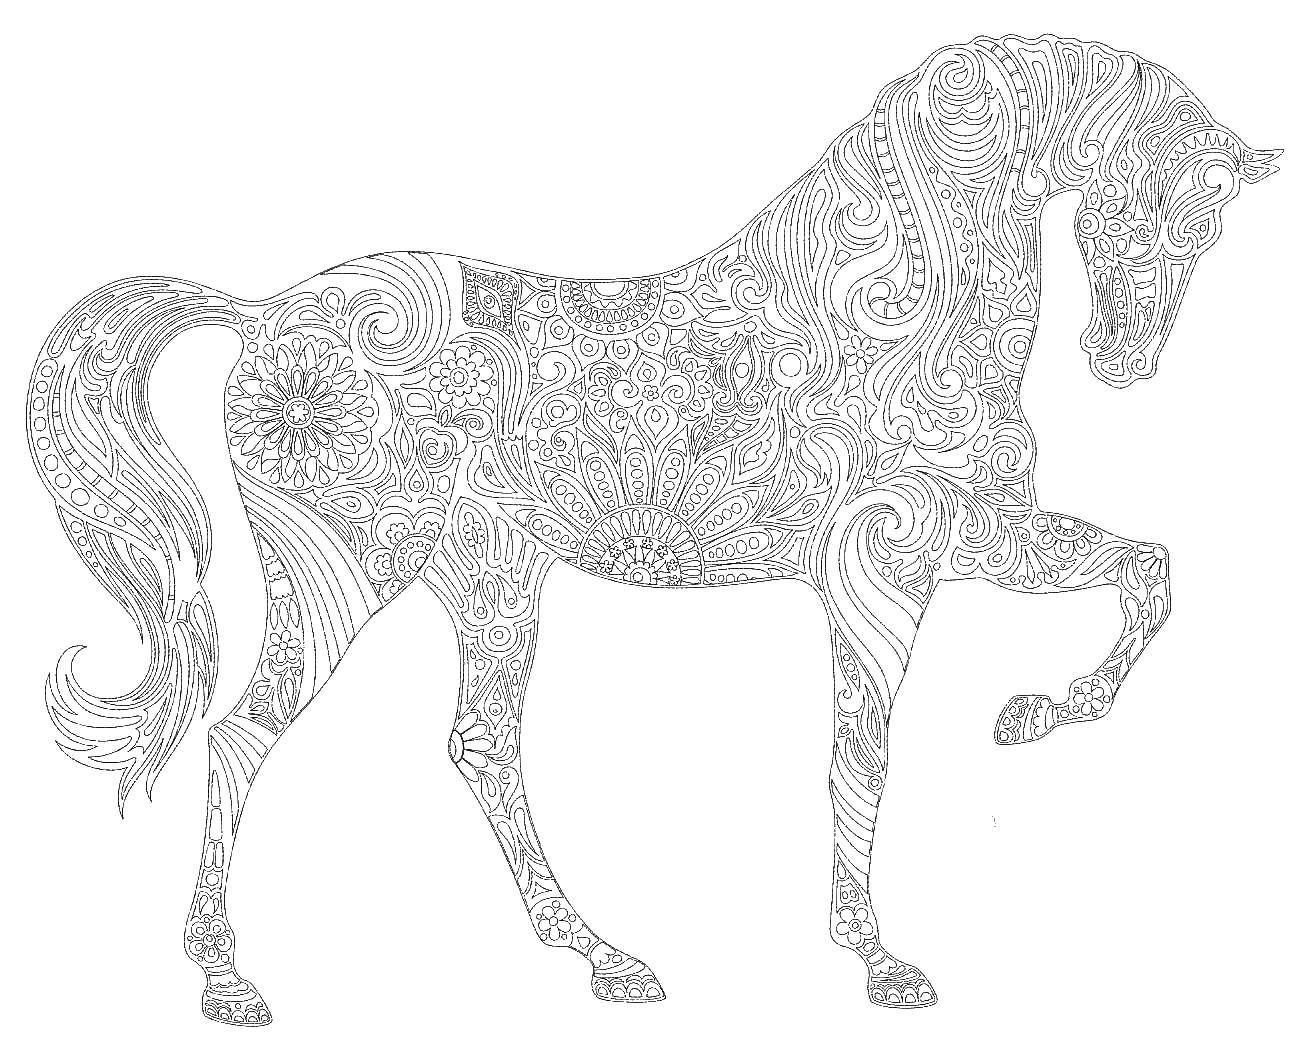 Название: Раскраска Раскраска лошадь антистресс. Категория: раскраски антистресс. Теги: раскраски, антистресс, лошадь.